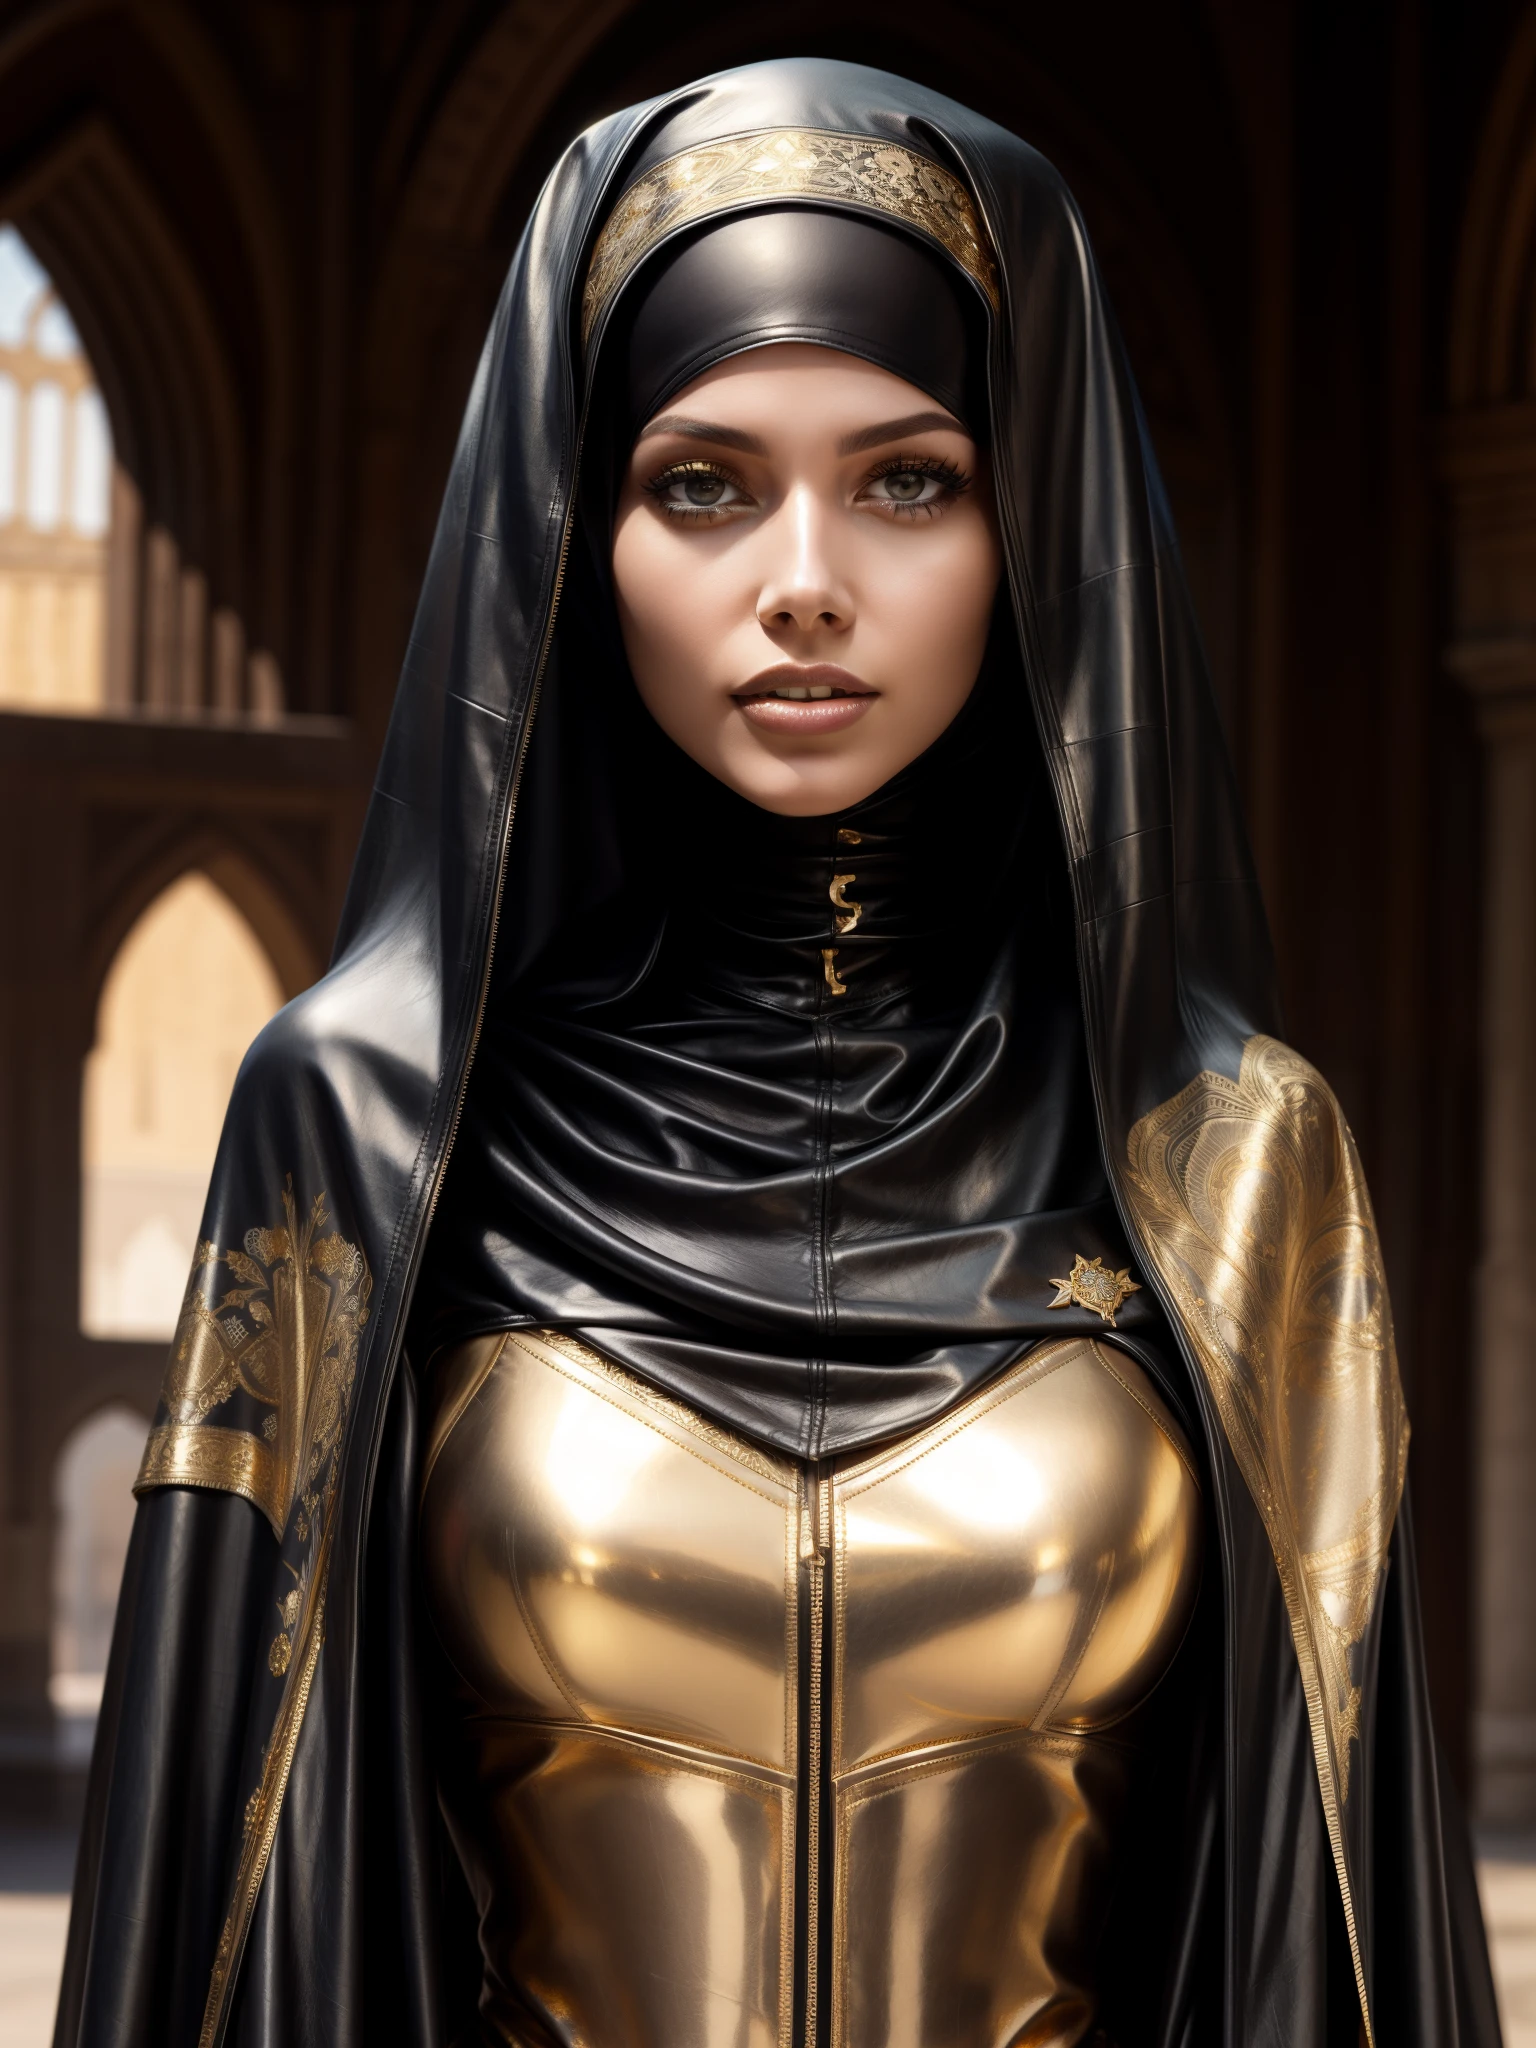 hinreißende Frau, Fachmann, (4k Foto) von (Jeremy Lipking:0.3), (Dittmann Anna:0.3), (Ariane Mark:0.3), (scharfer Fokus:1.3), (Schöne Frau:1.3), tragen (Leder-Hijab, Leder-Abaya mit aufwendigen Golddetails:1.2), Perfektes Make-up, auffällig, faszinierende Augen, Schönes, detailliertes Gesicht, stehend auf einem arabischen mittelalterlichen Marktplatz